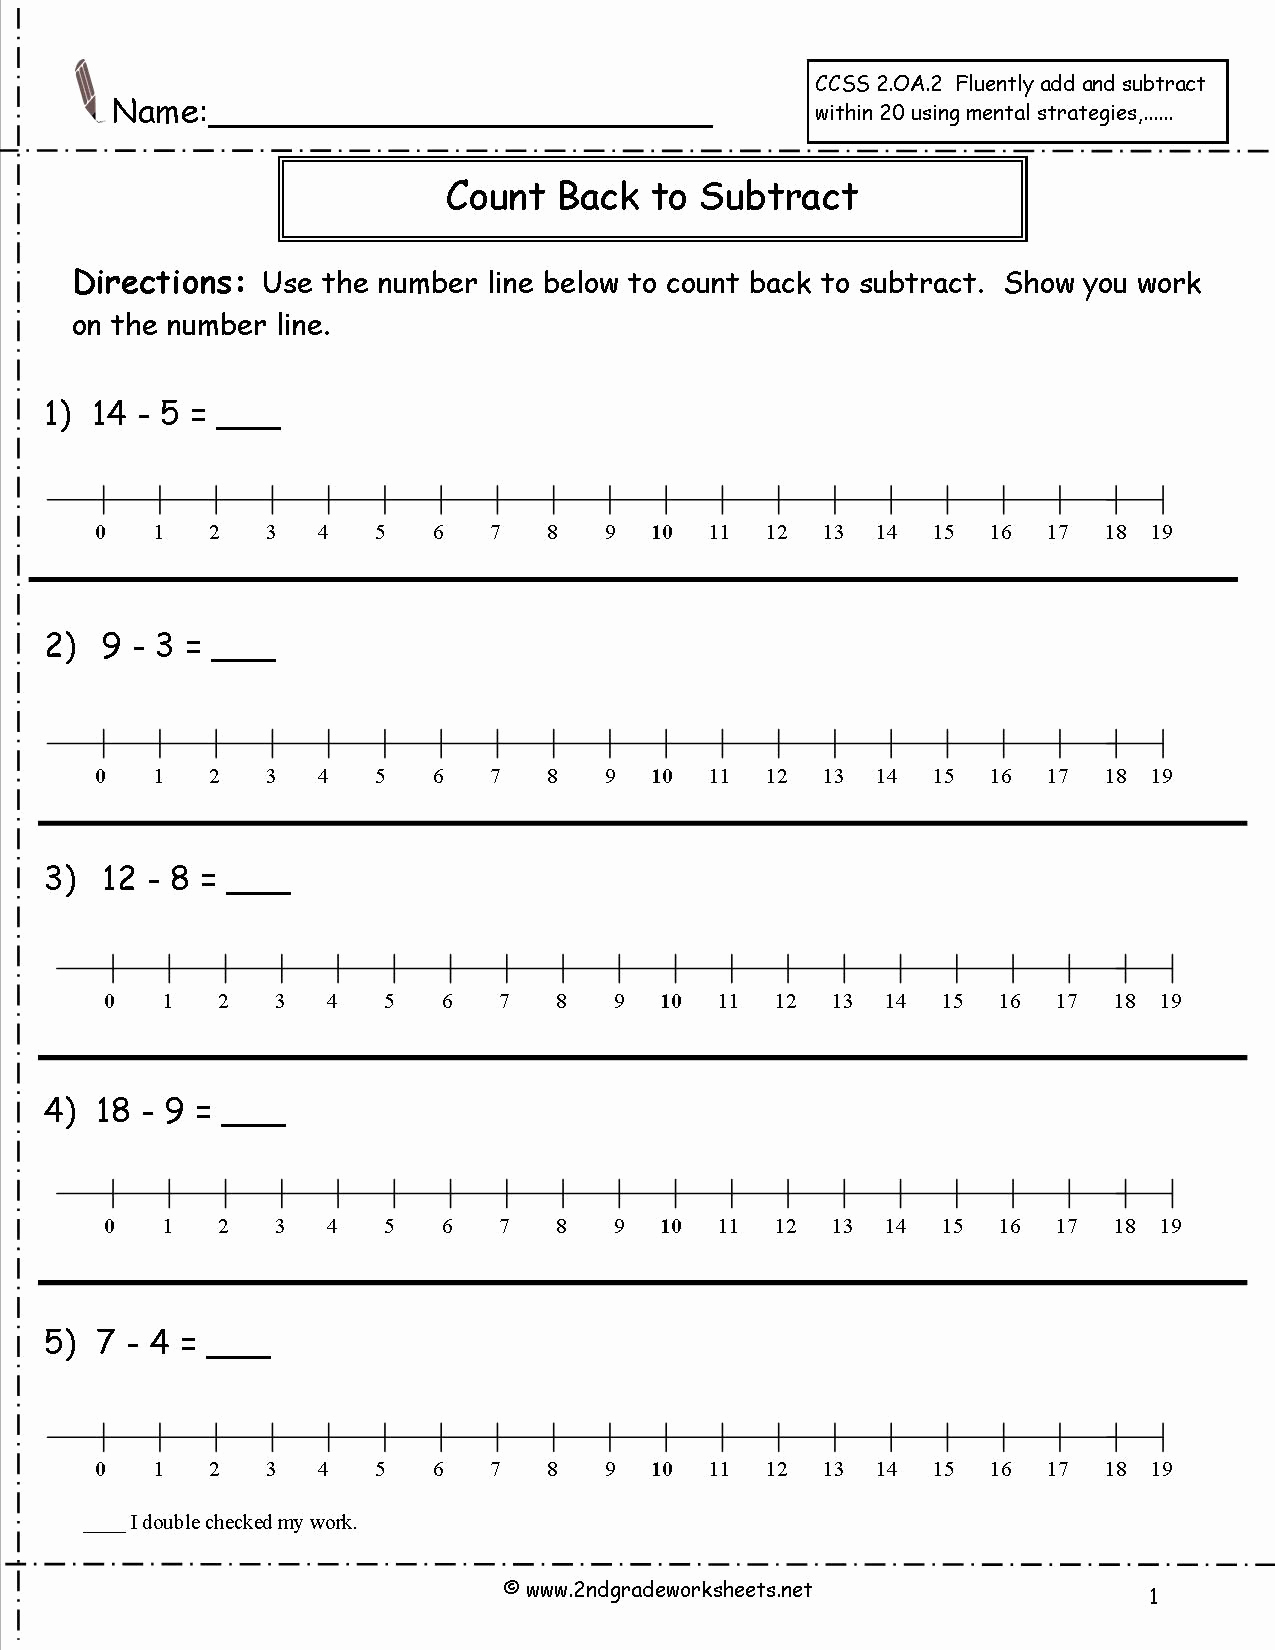 3rd Grade Number Line Worksheets Best Of Number Line Subtraction Worksheets 3rd Grade